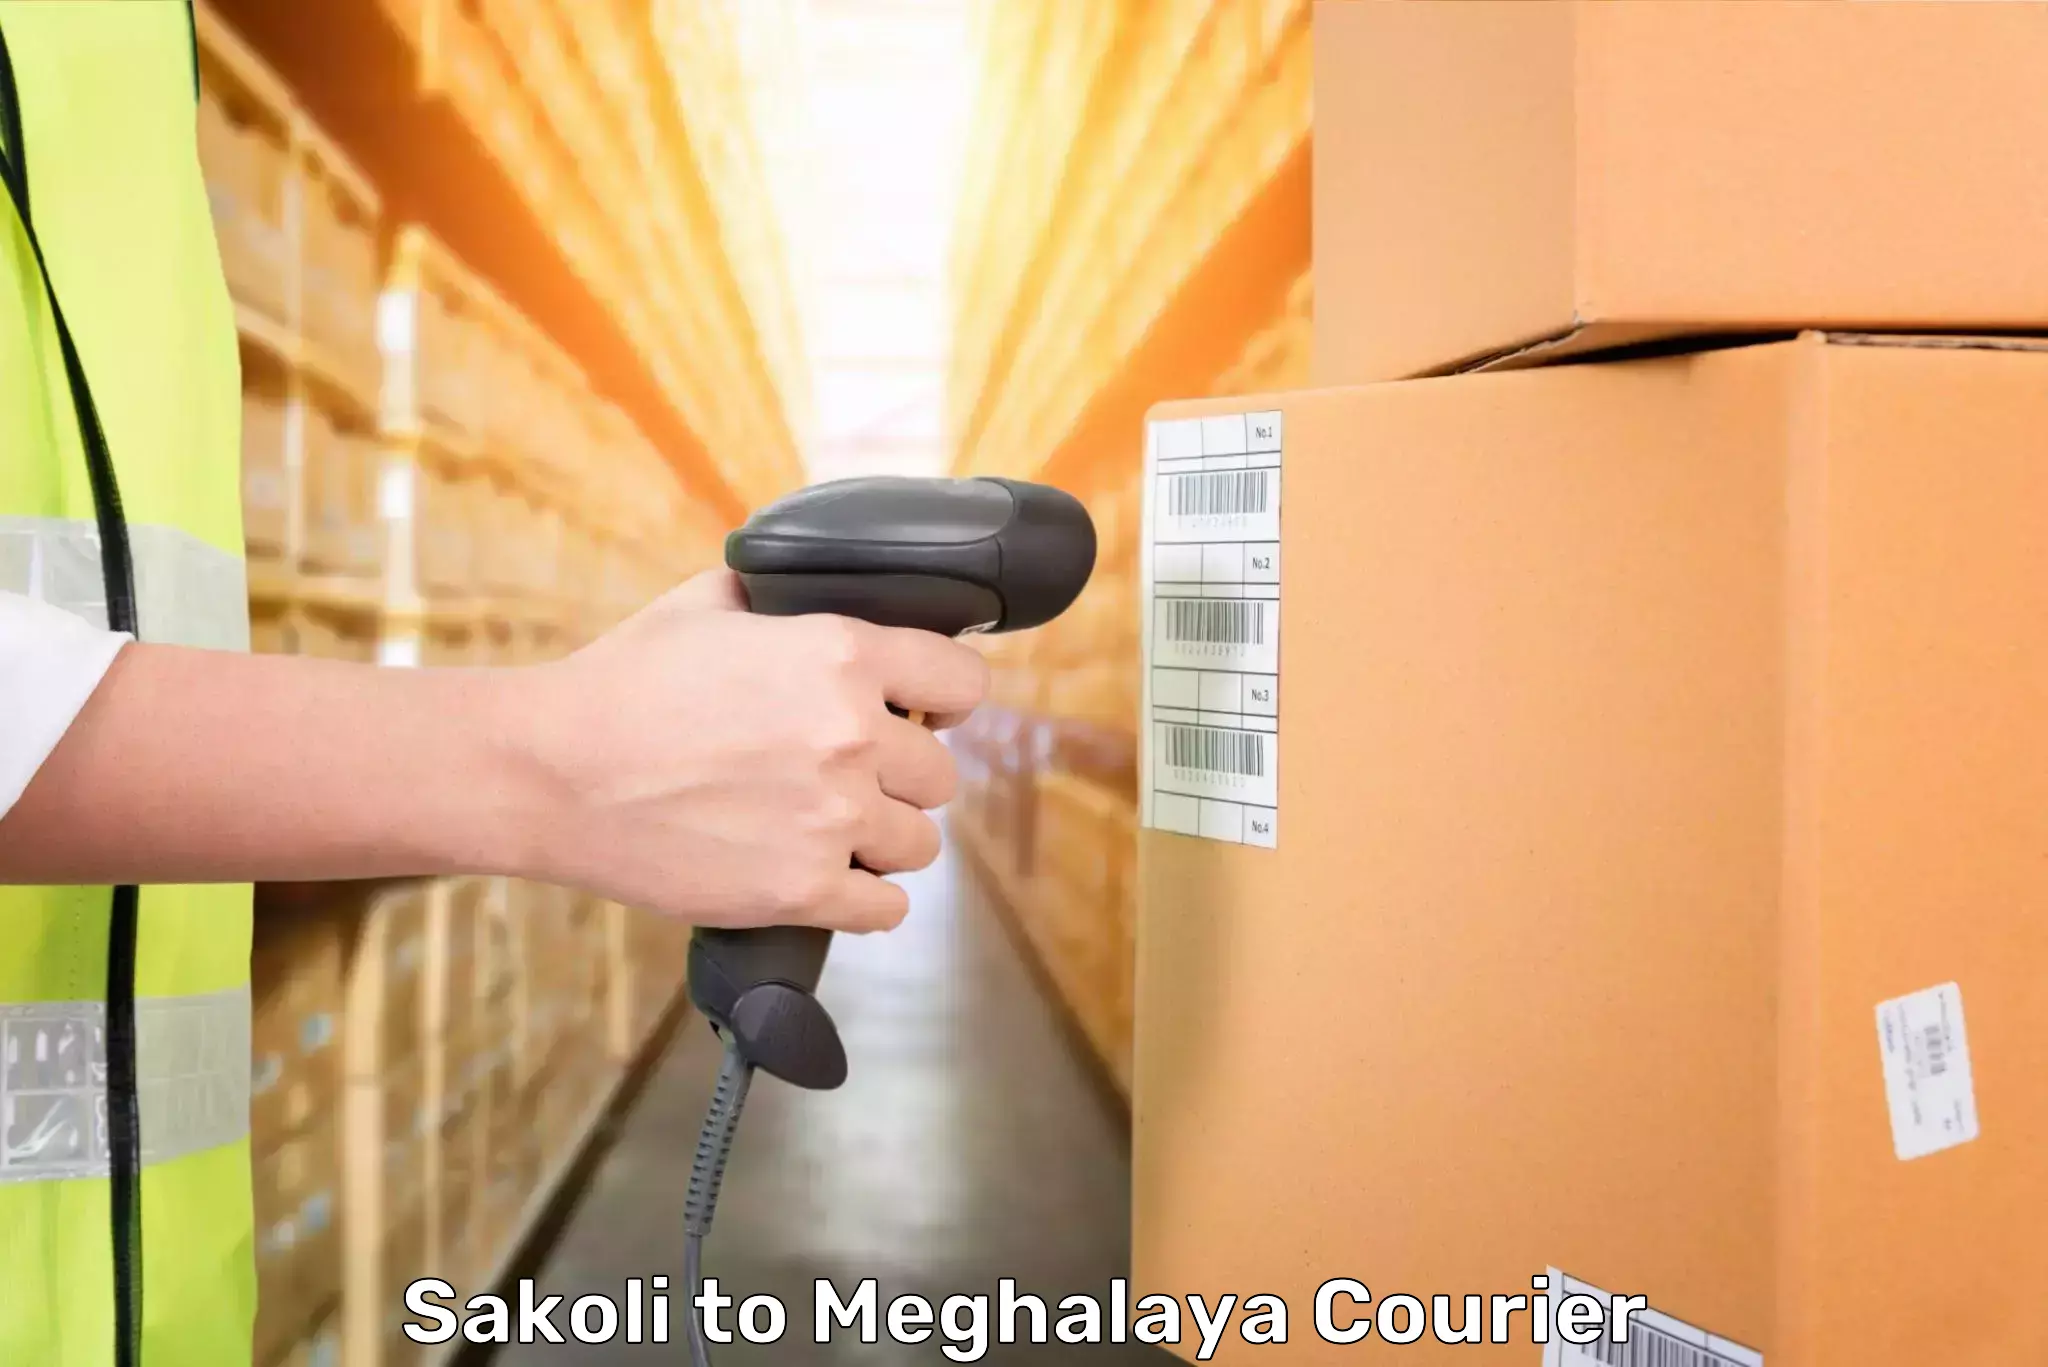 Baggage shipping experts Sakoli to Meghalaya